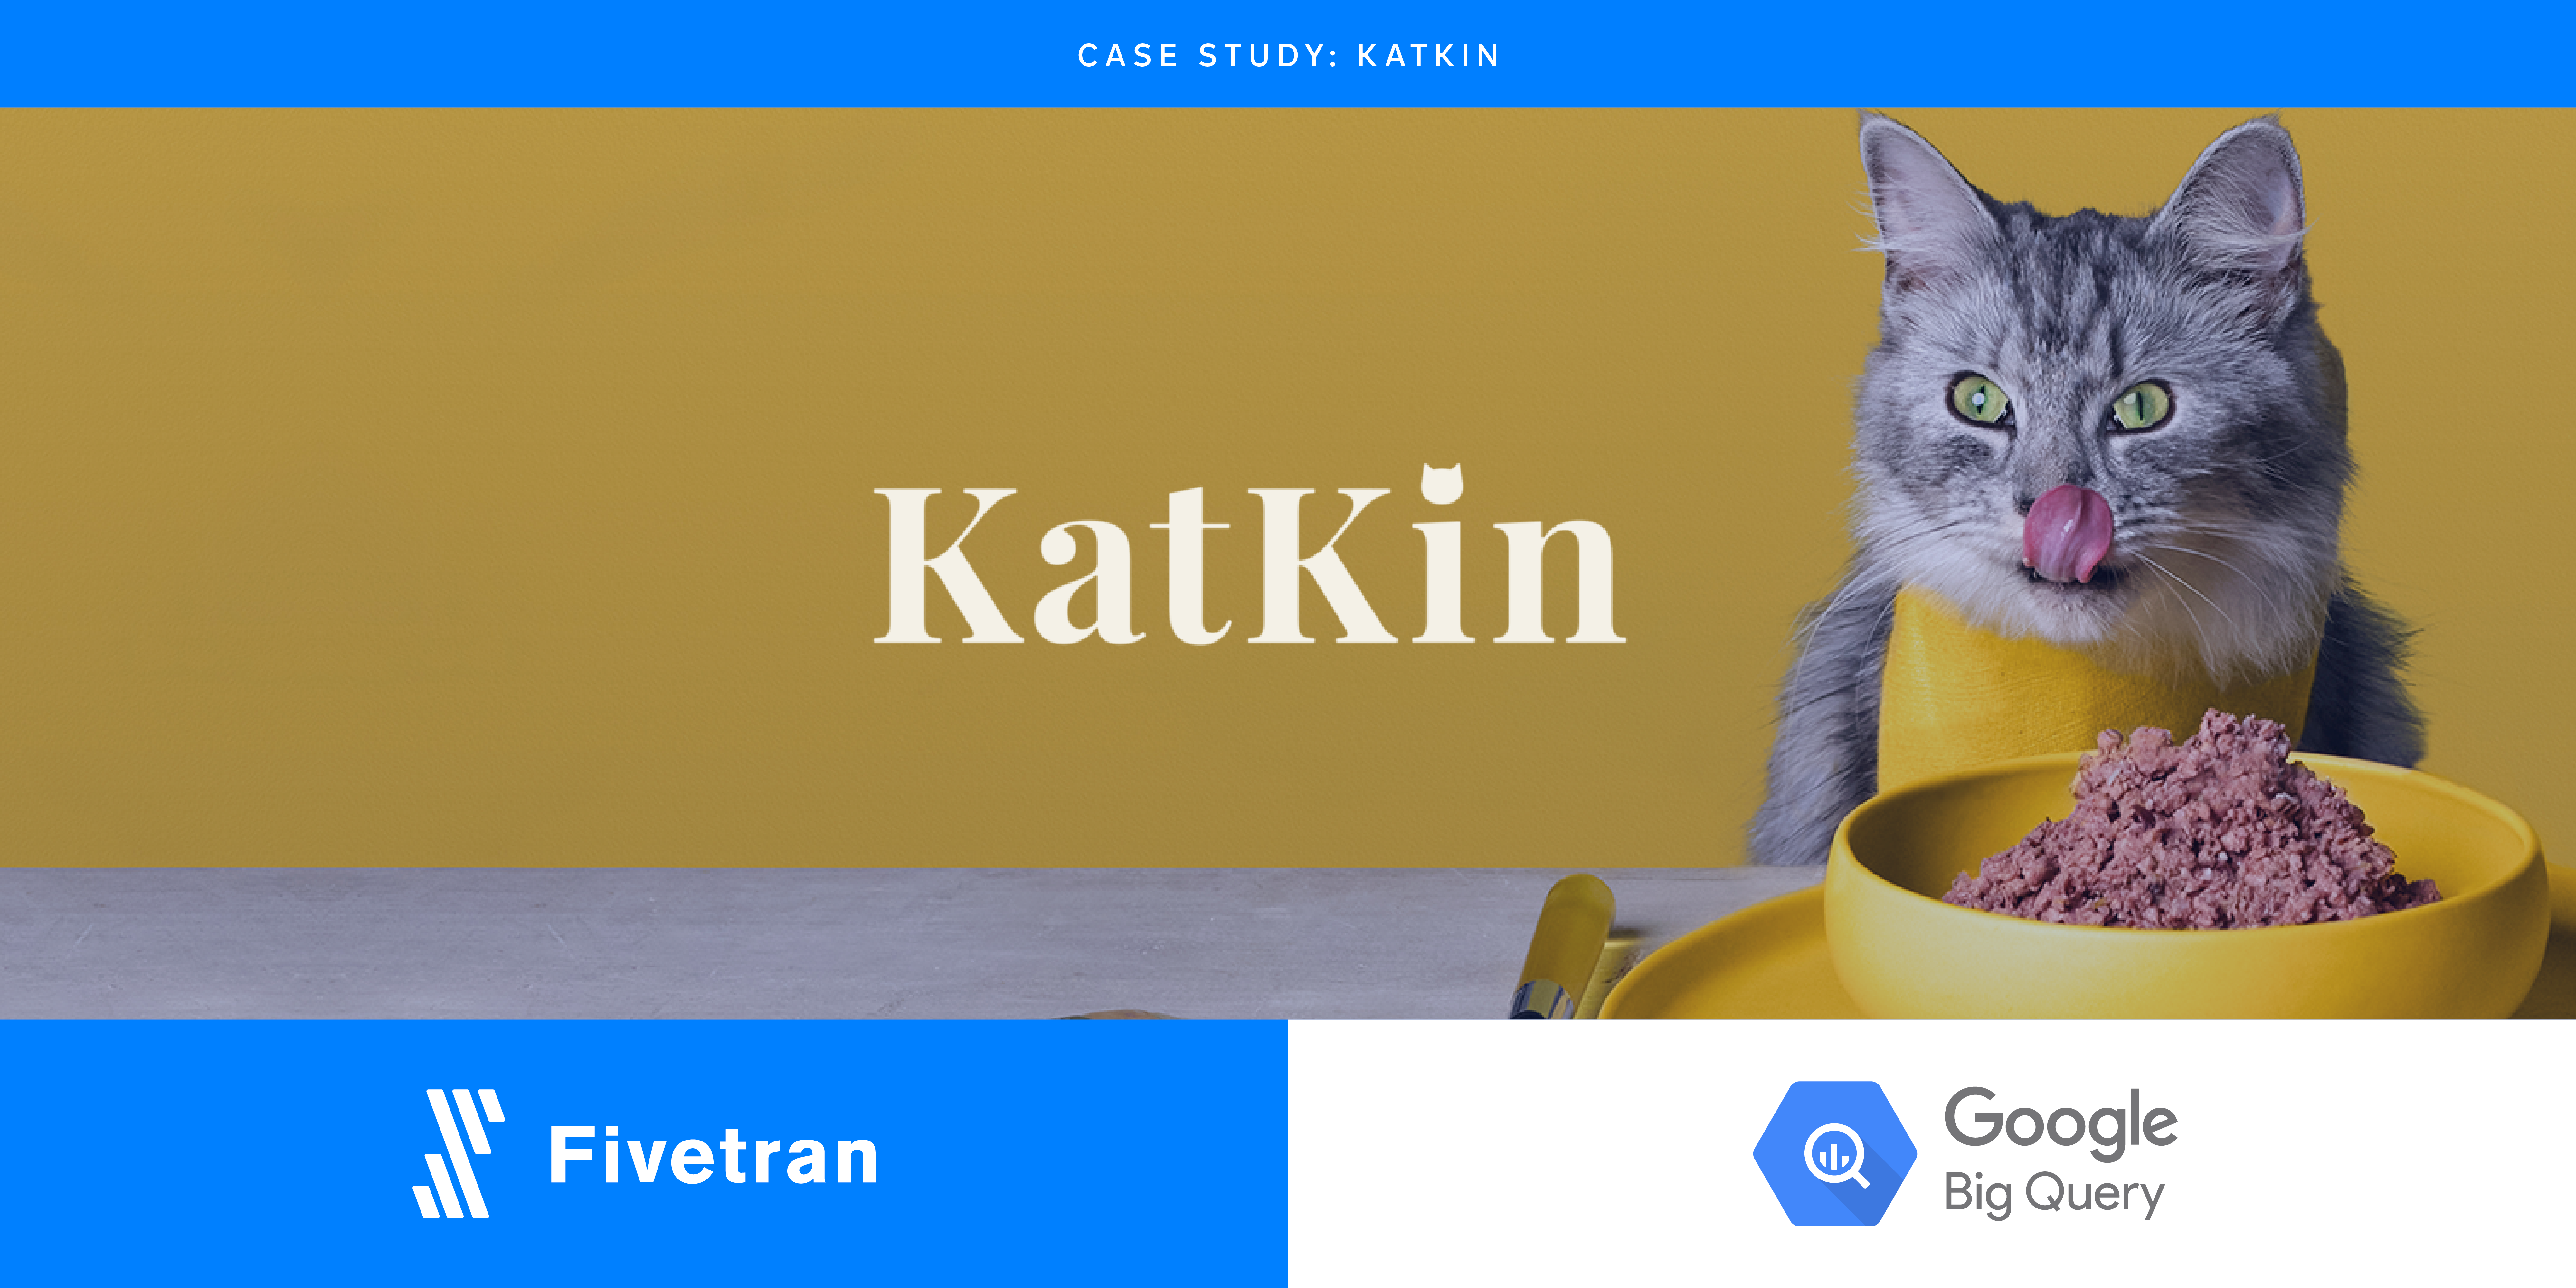 Fivetran Feeds Katkin Data to Grow Quality Cat Food Business